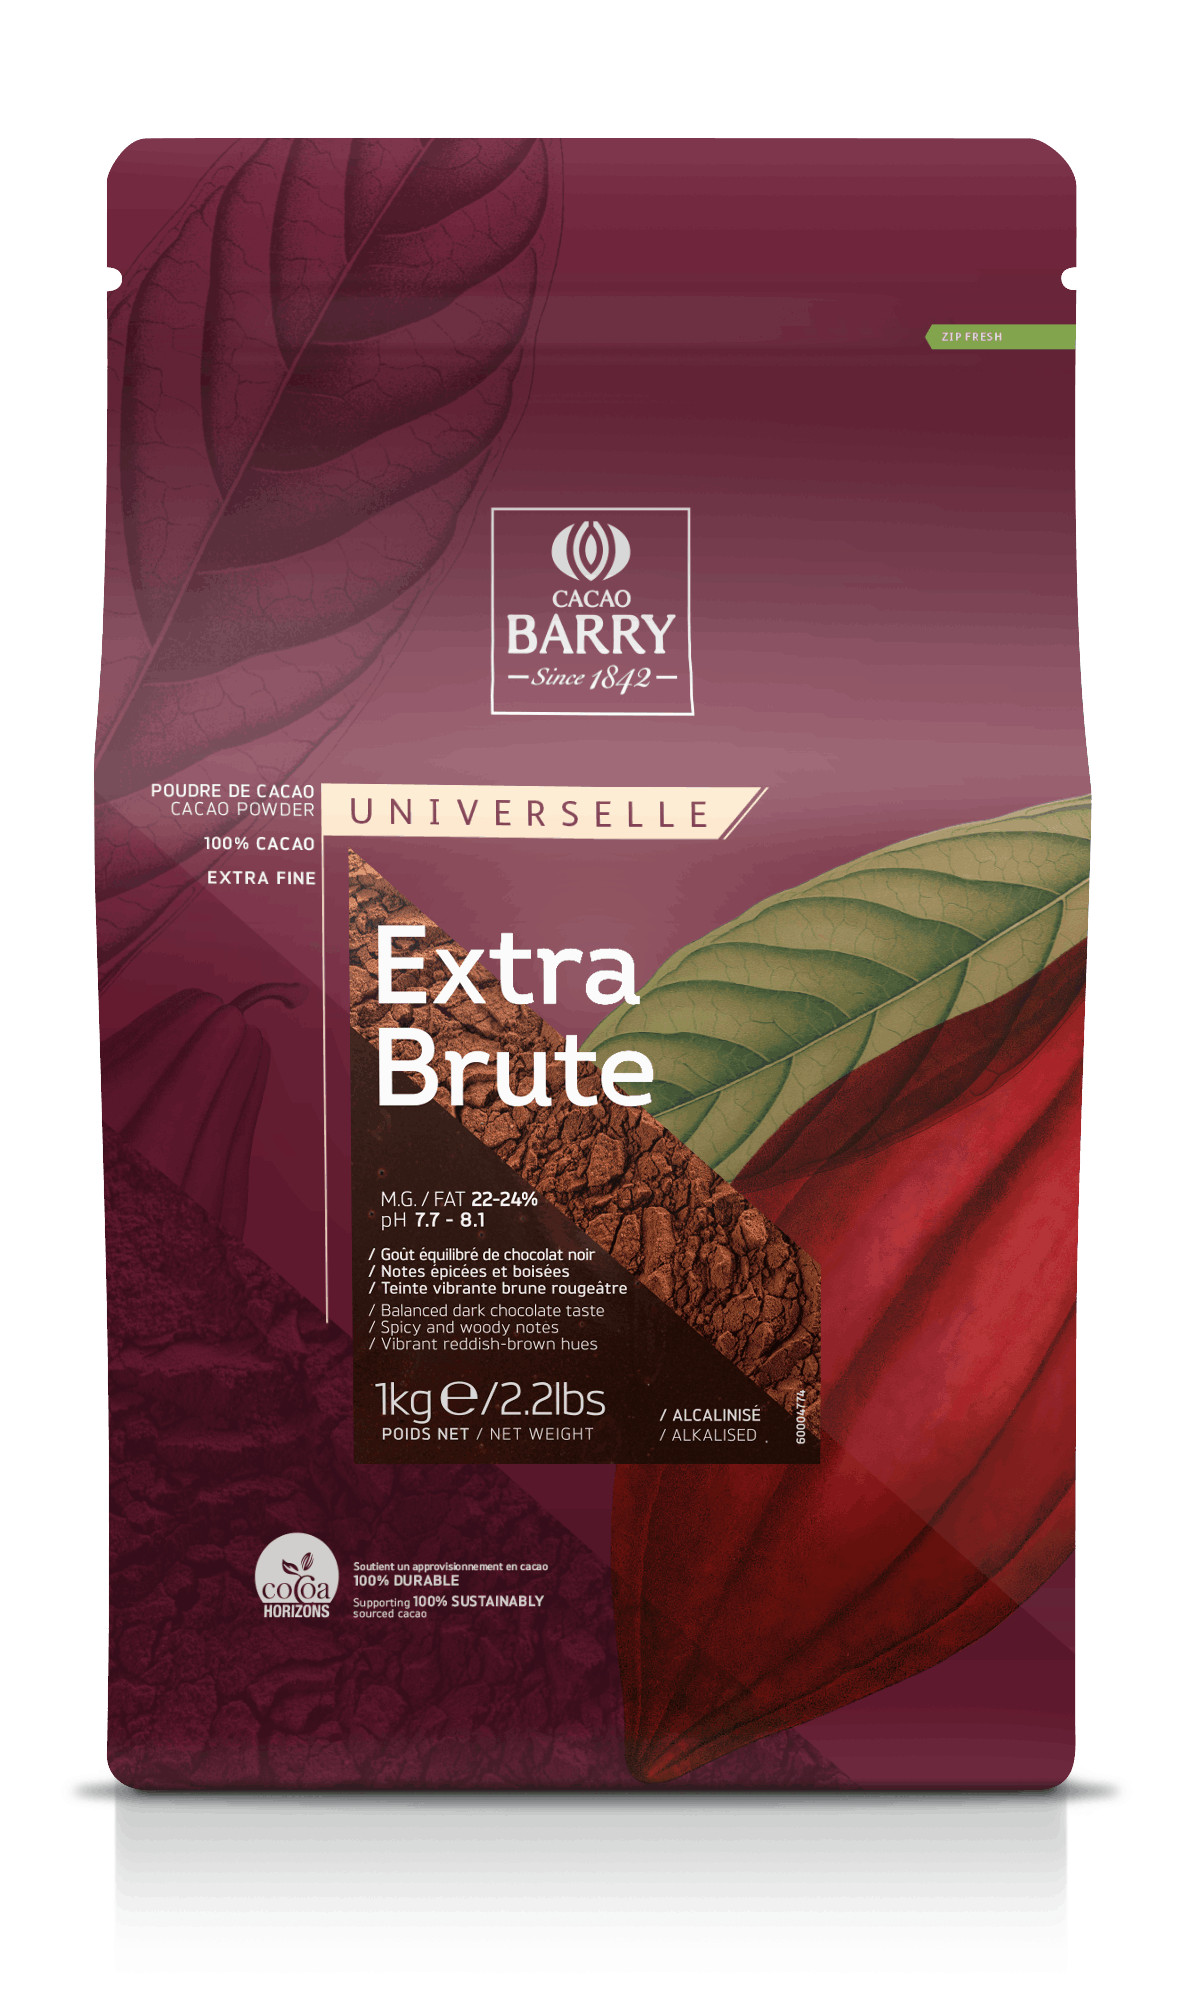 Алкализирано какао EXTRA BRUTE 22-24%, 1кг DCP-22EXBRU-E0-89B Какао Barry